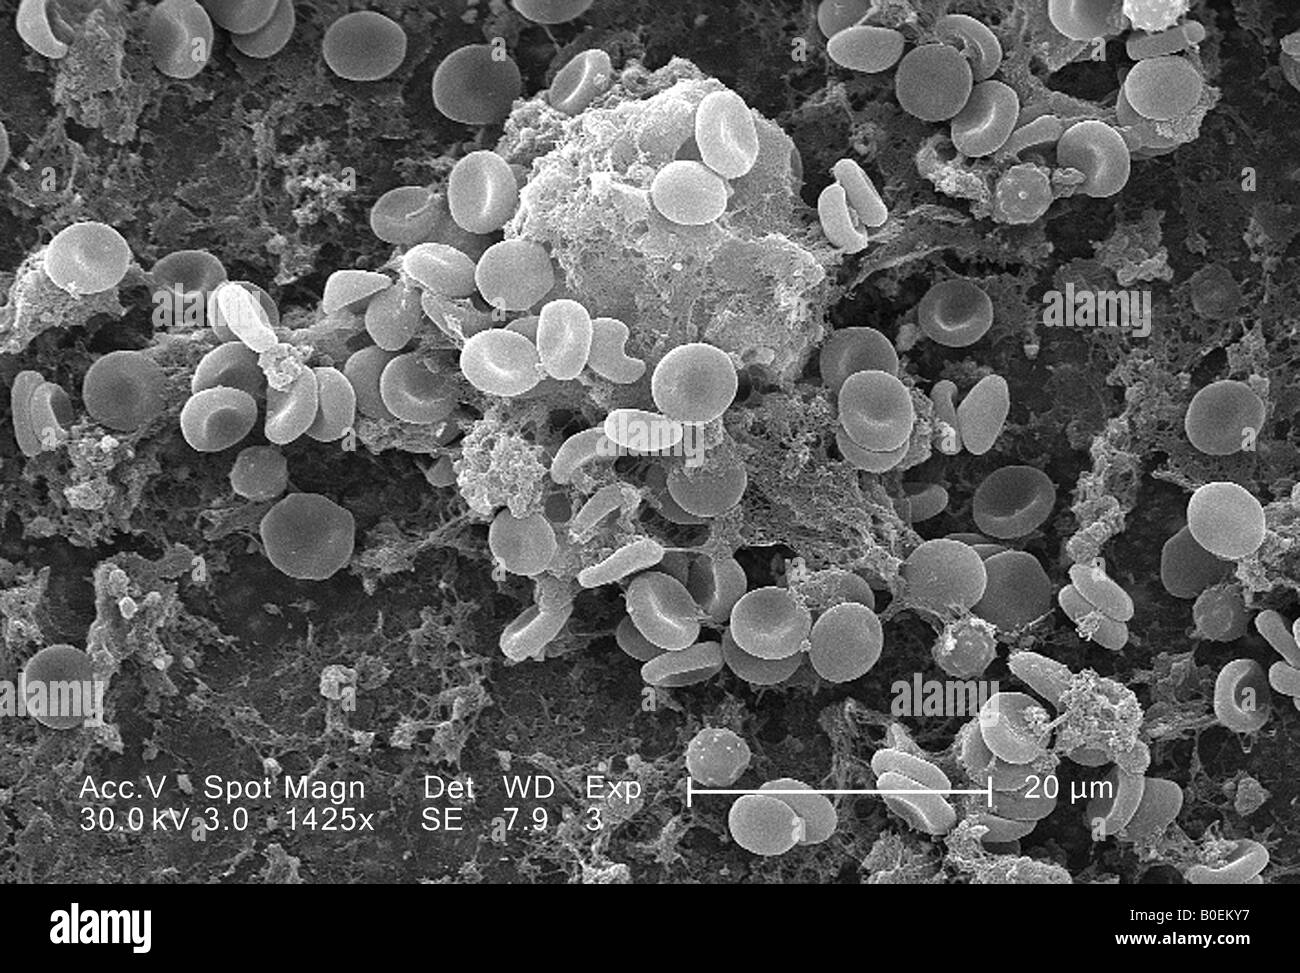 Diaporama : des images de microscopie électronique à couper le souffle